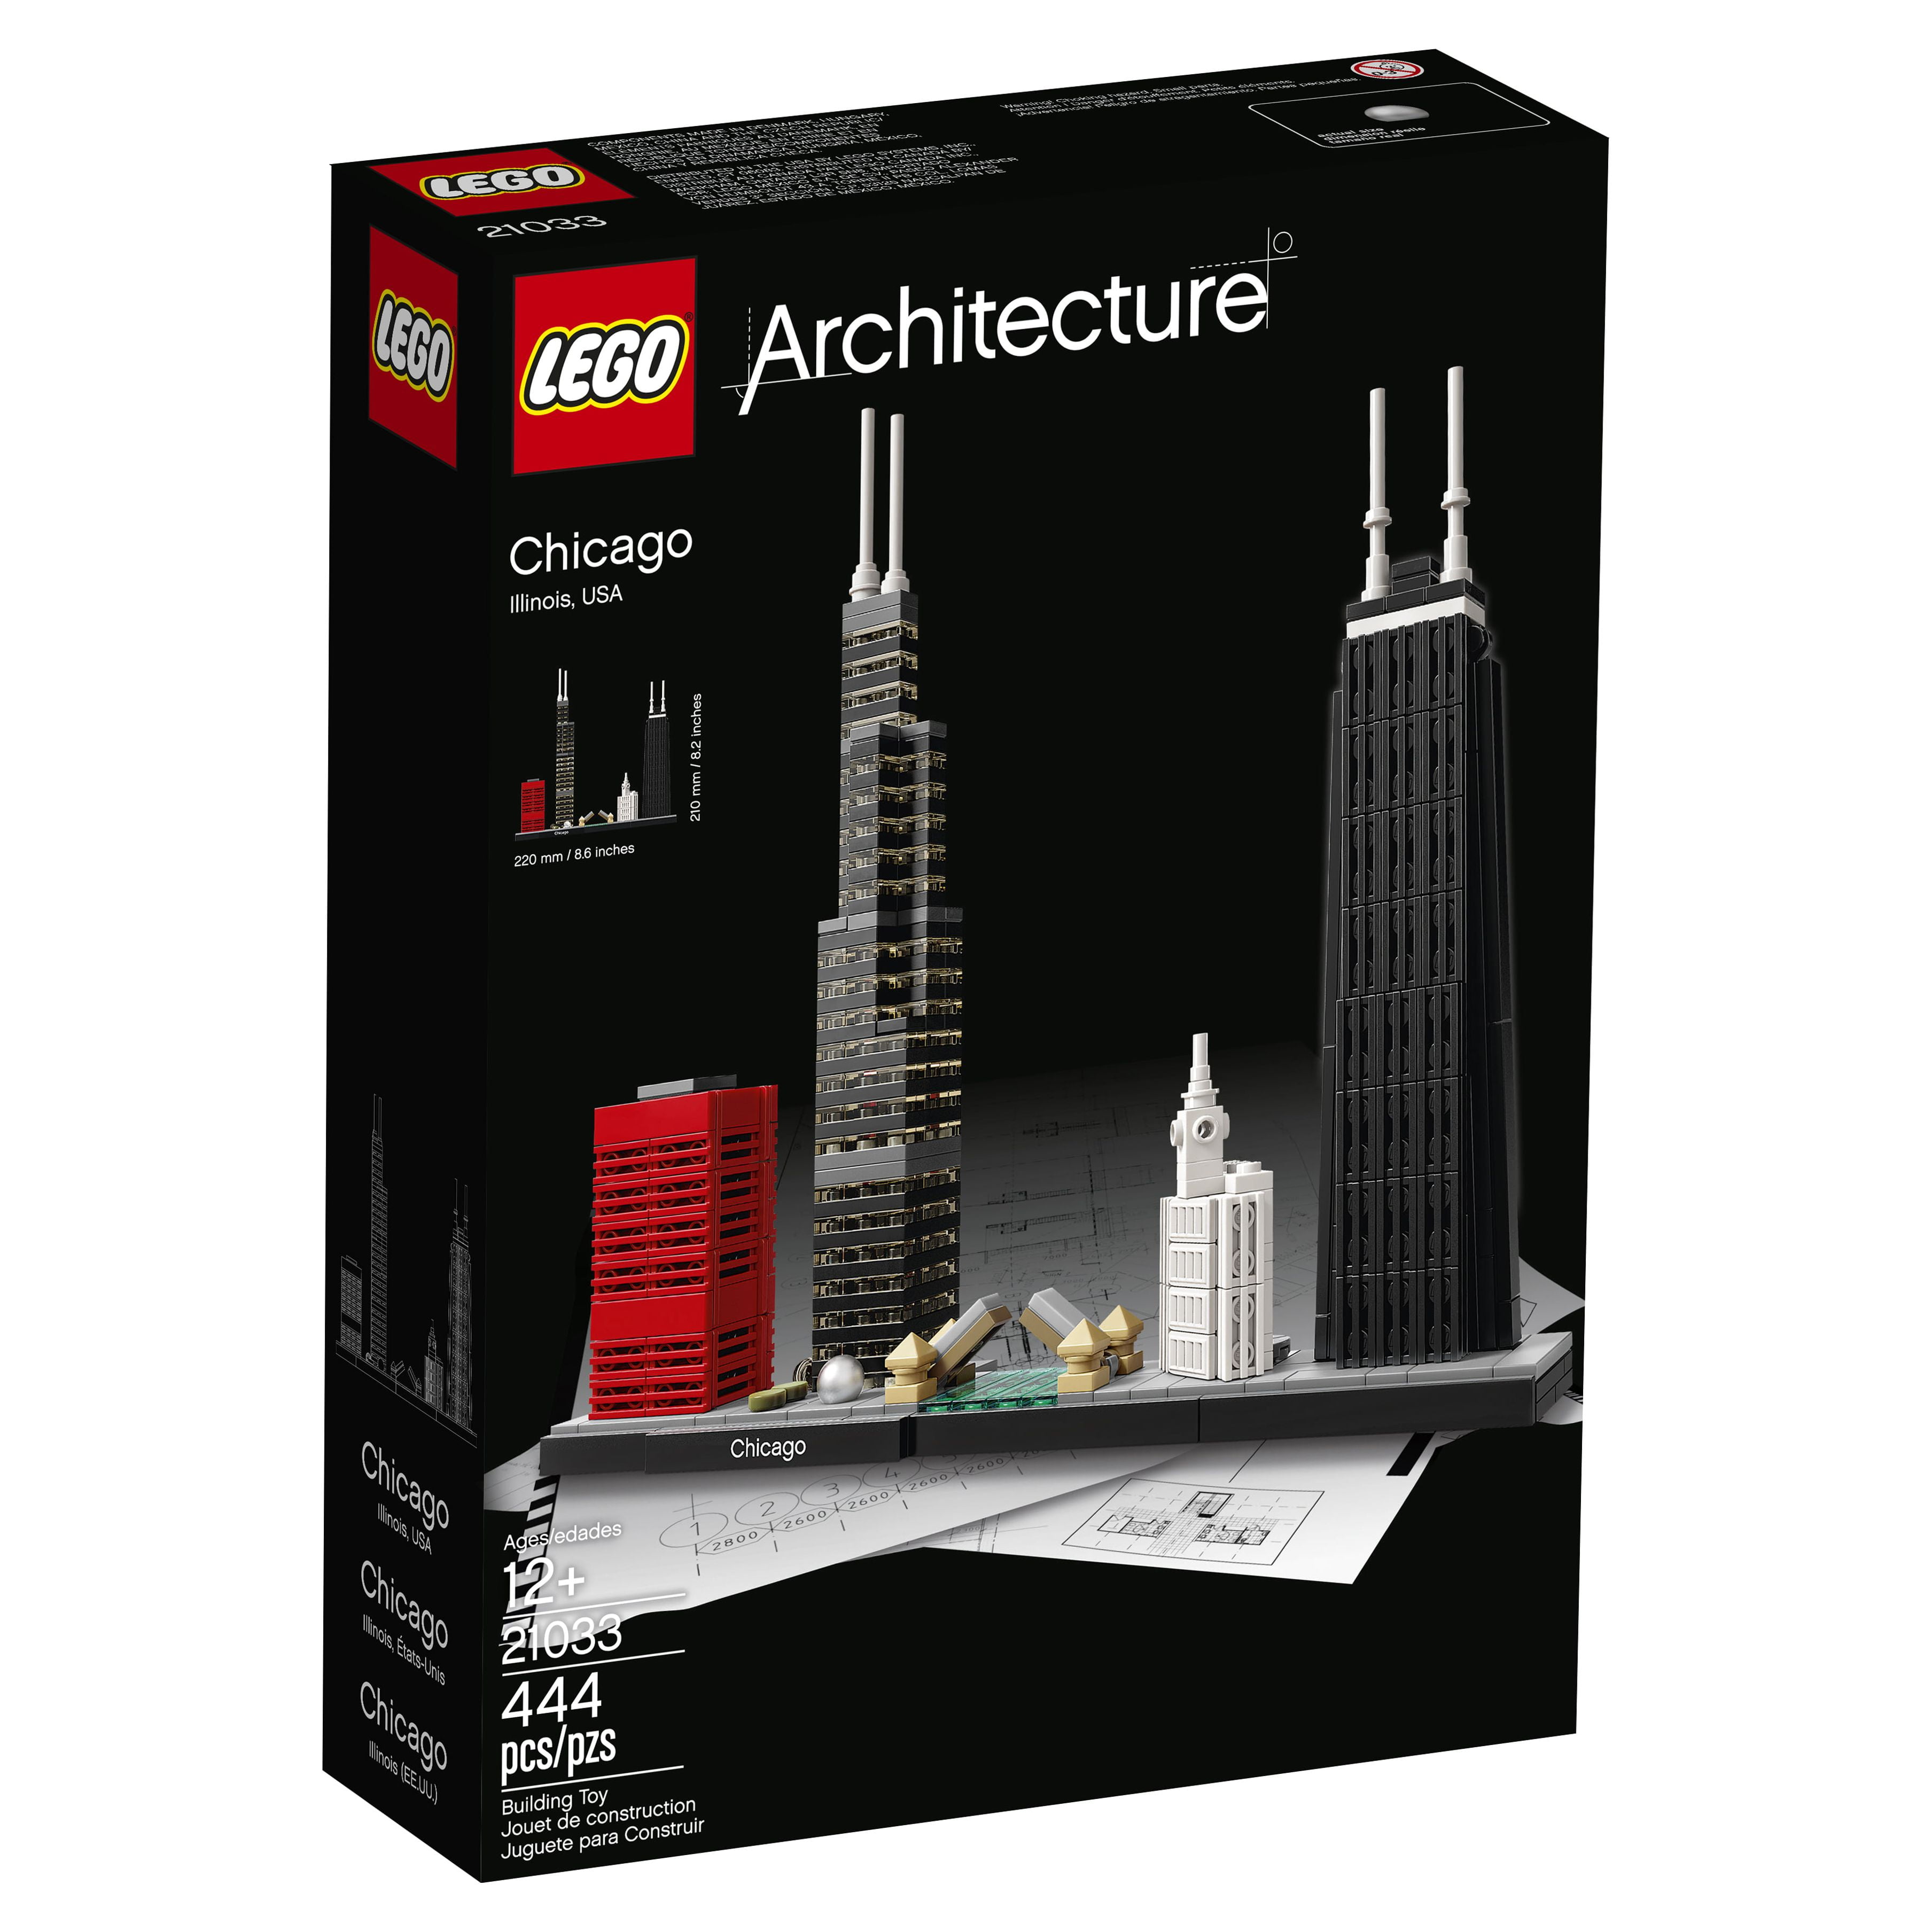 LEGO Architecture Chicago 21033 Building Set (444 Pieces